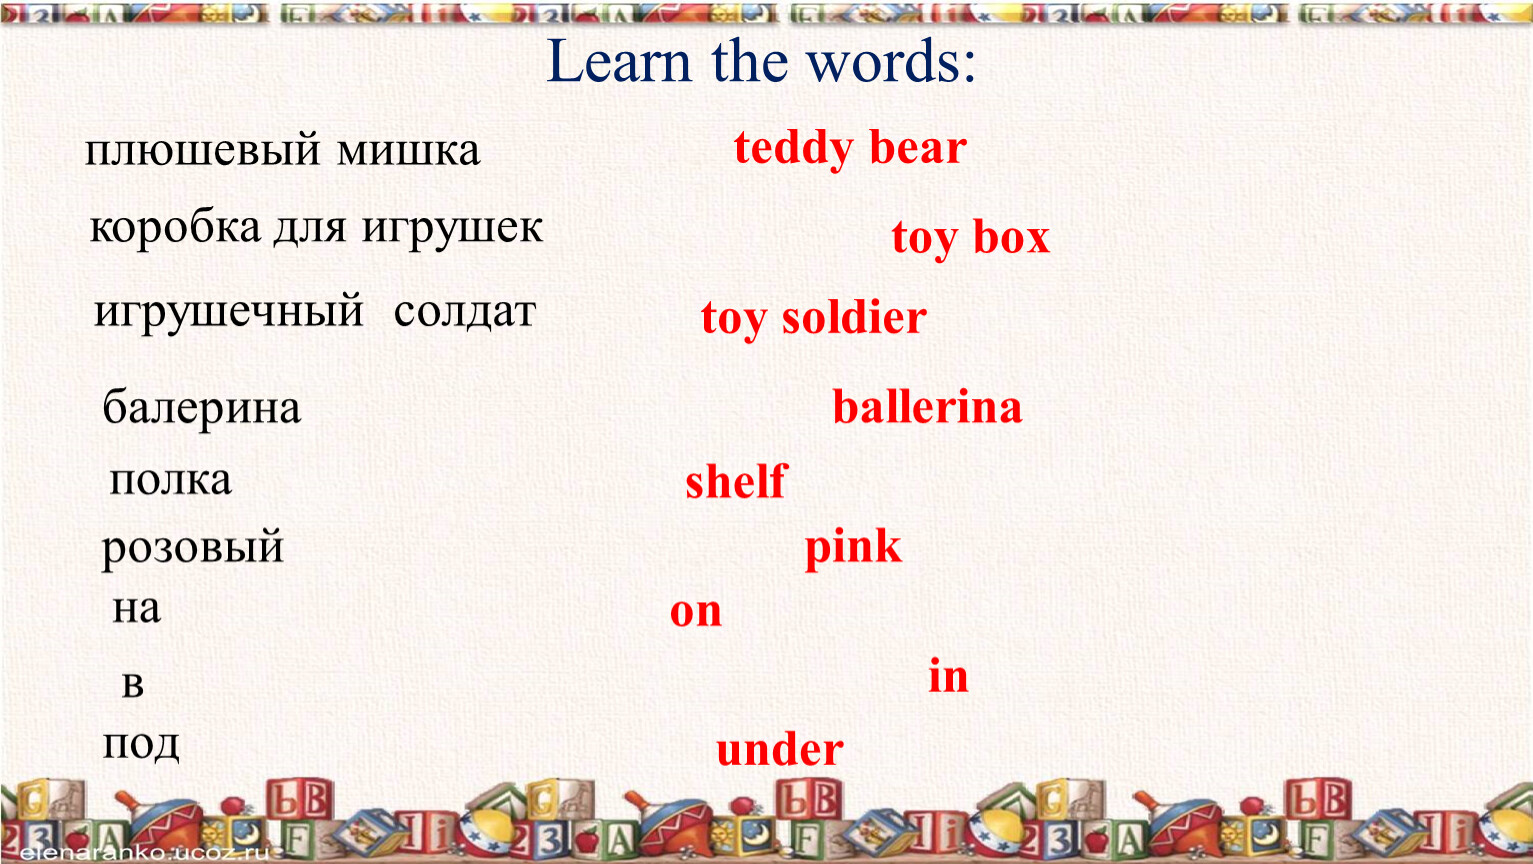 Shelf перевод с английского на русский. Toy Soldier спотлайт. Toy Soldier транскрипция. Транскрипция английских слов плюшевый мишка. Toy Box транскрипция.